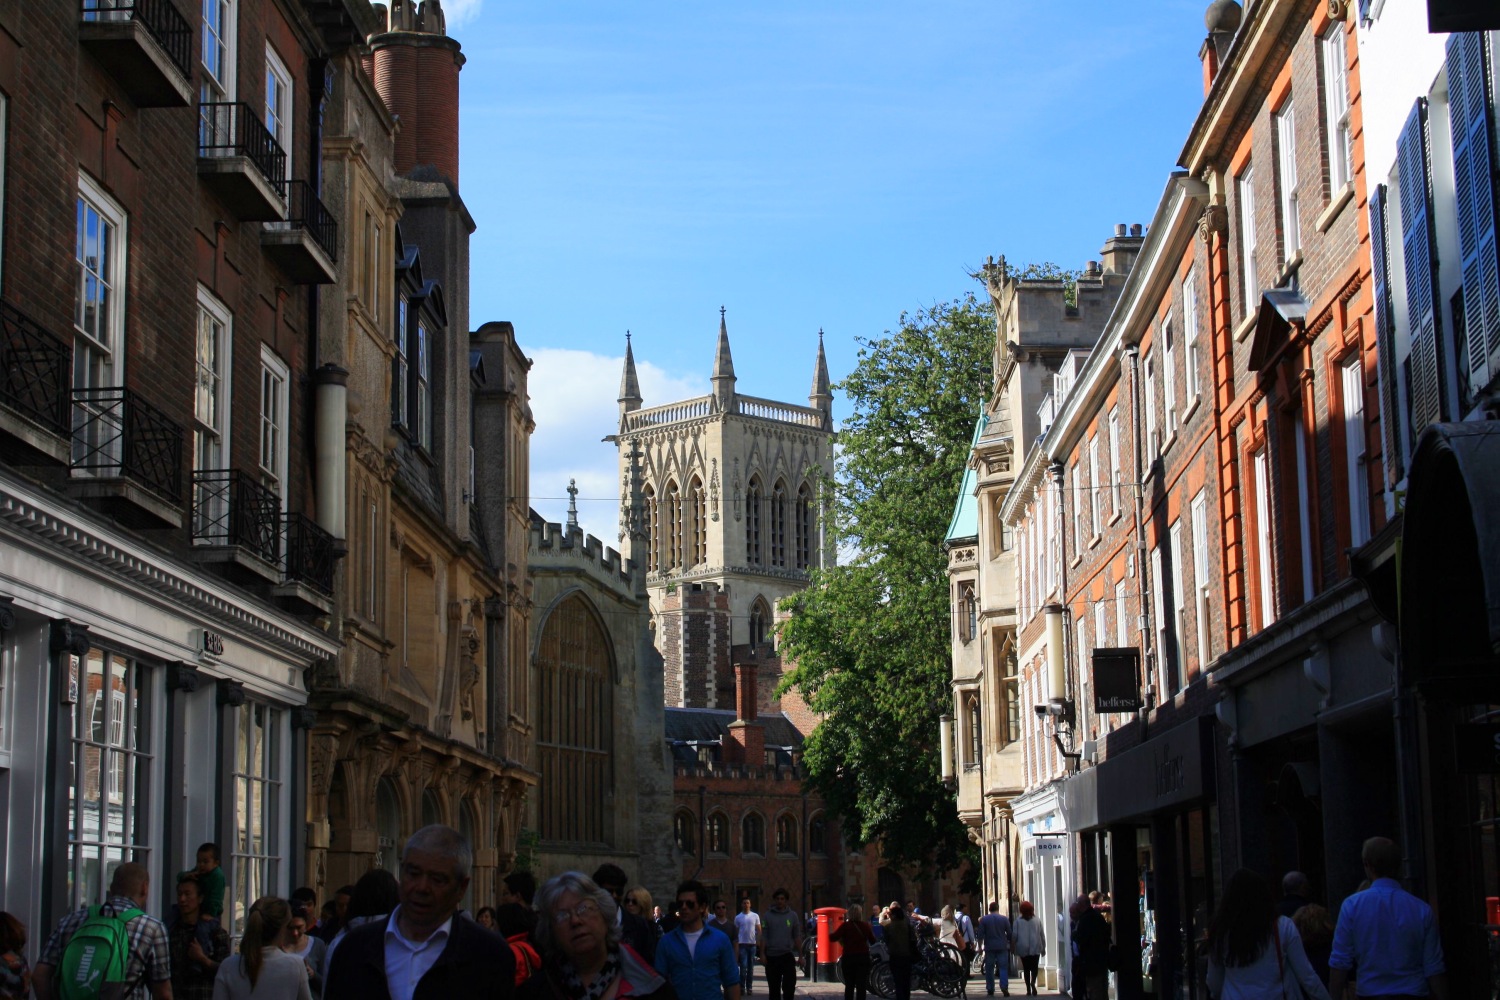 Une journée de printemps à Cambridge - Les petites joies de la vie londonienne